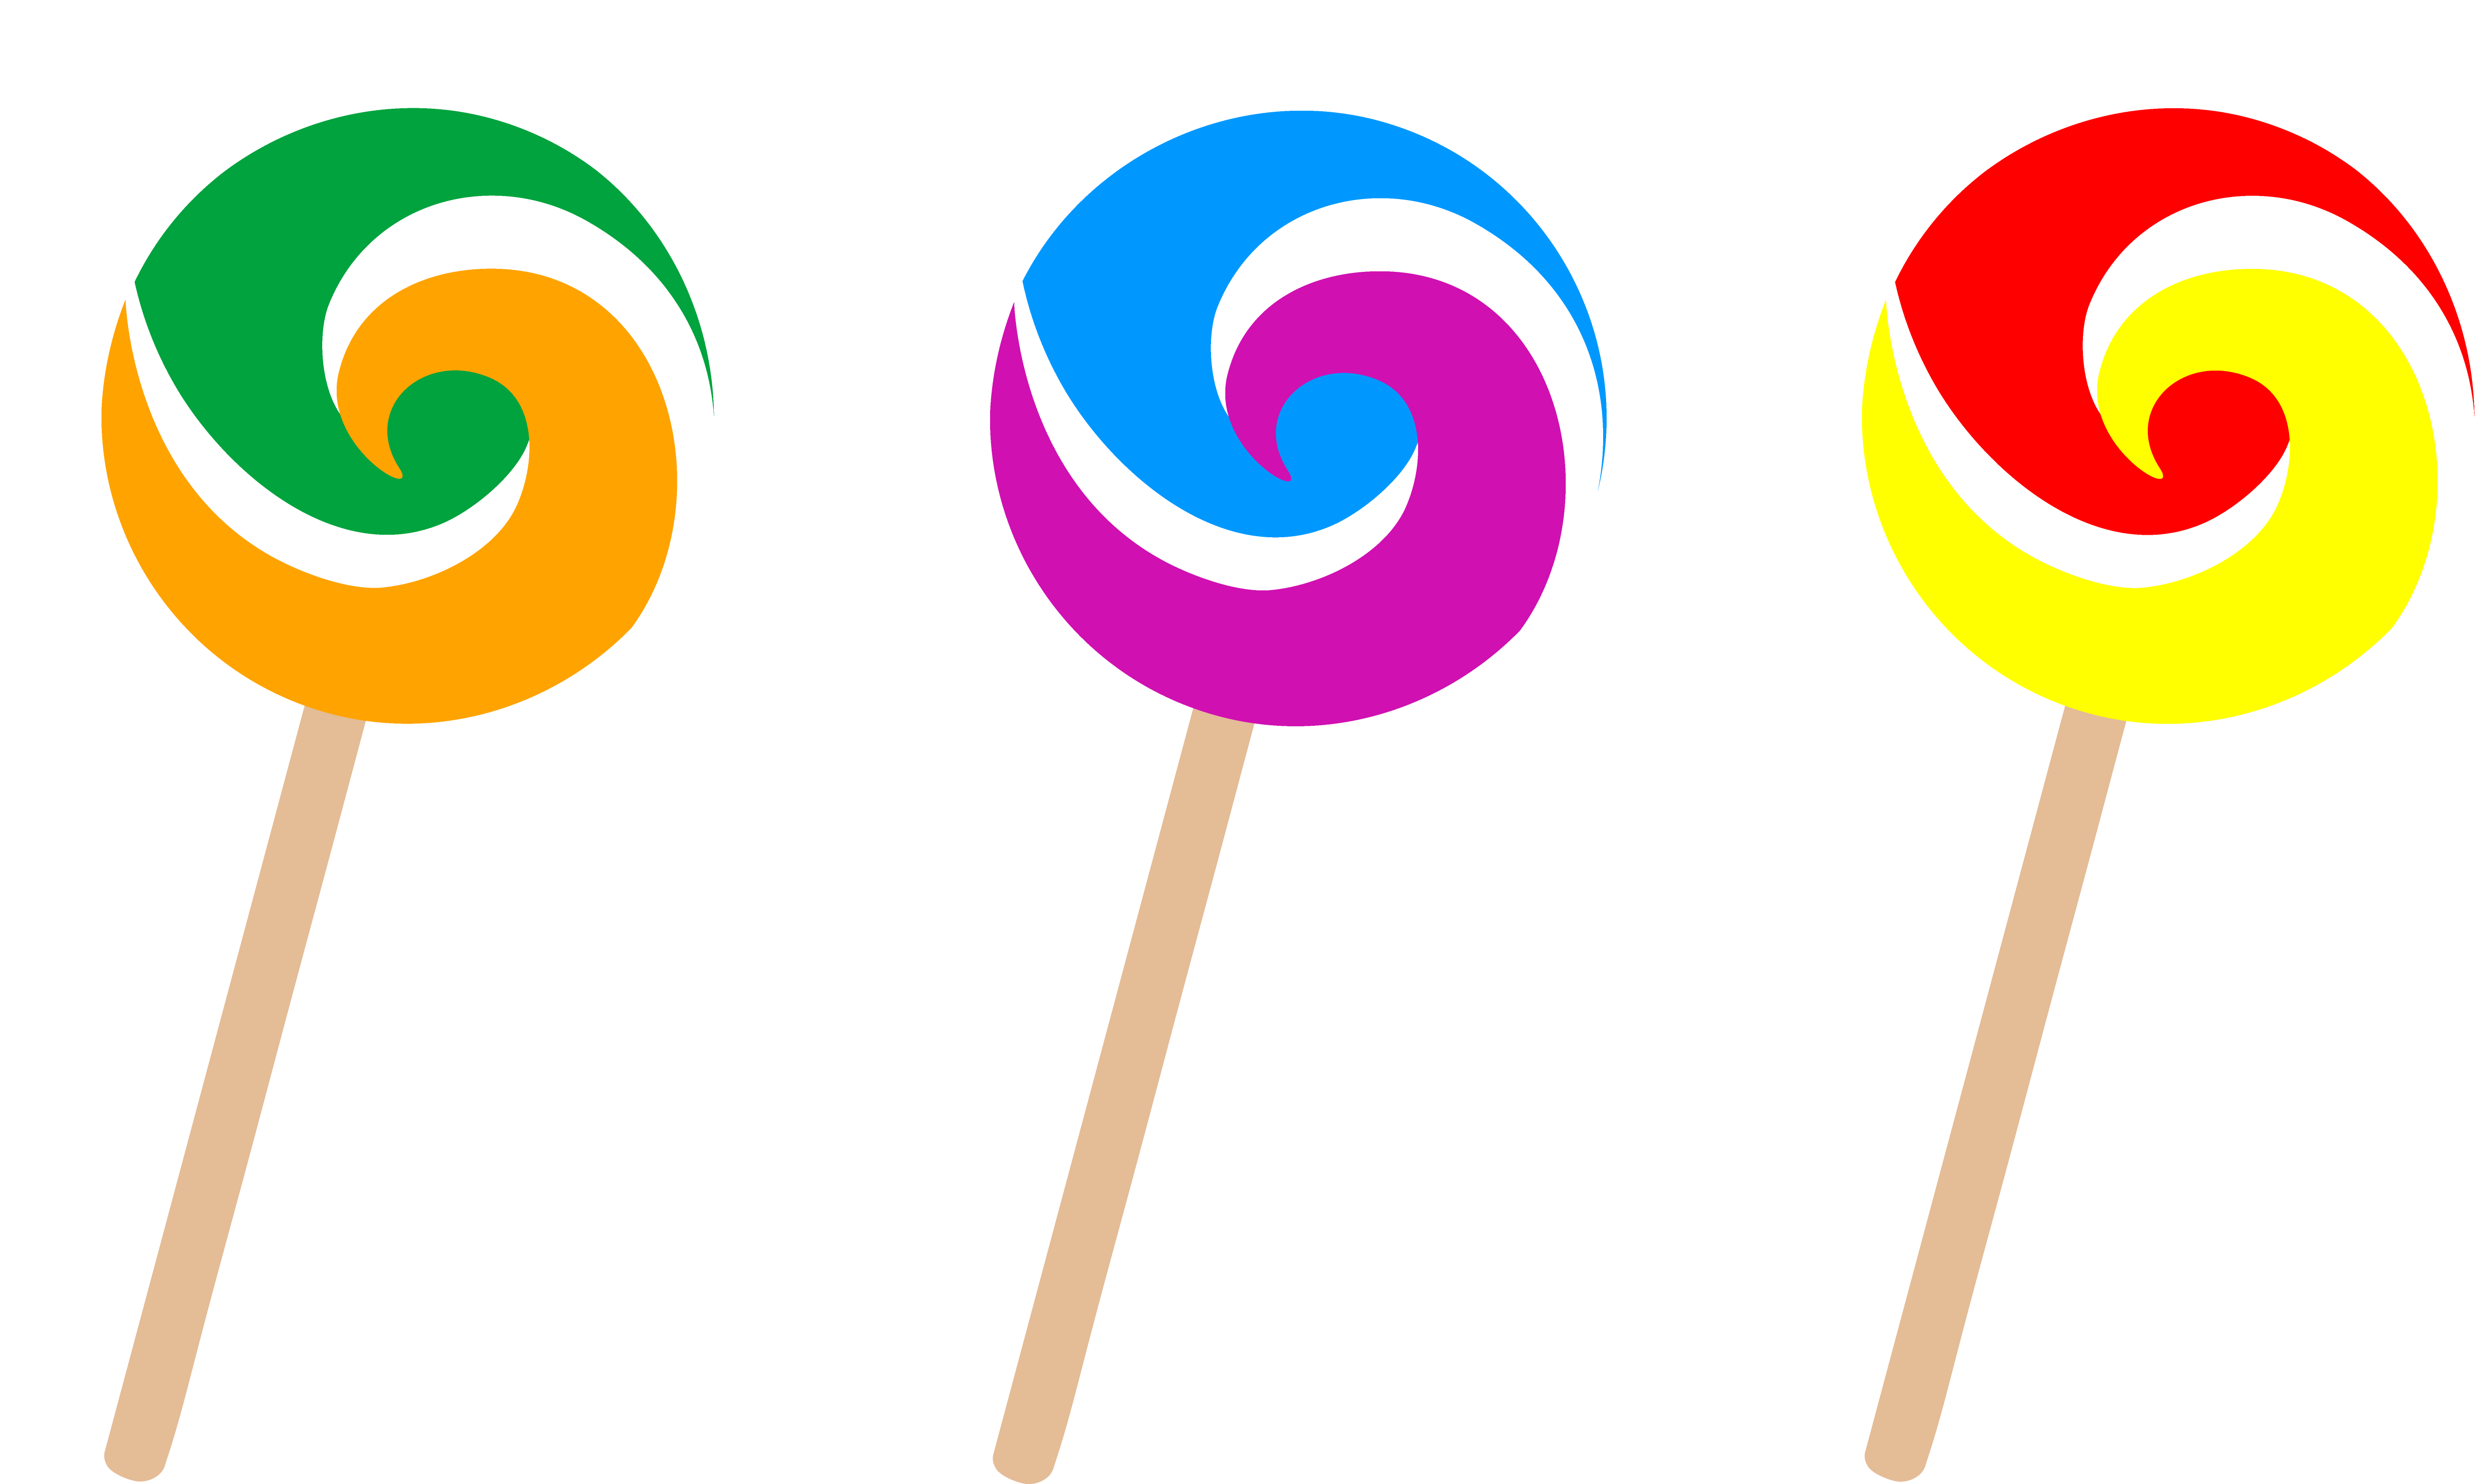 Lollipop cliparts